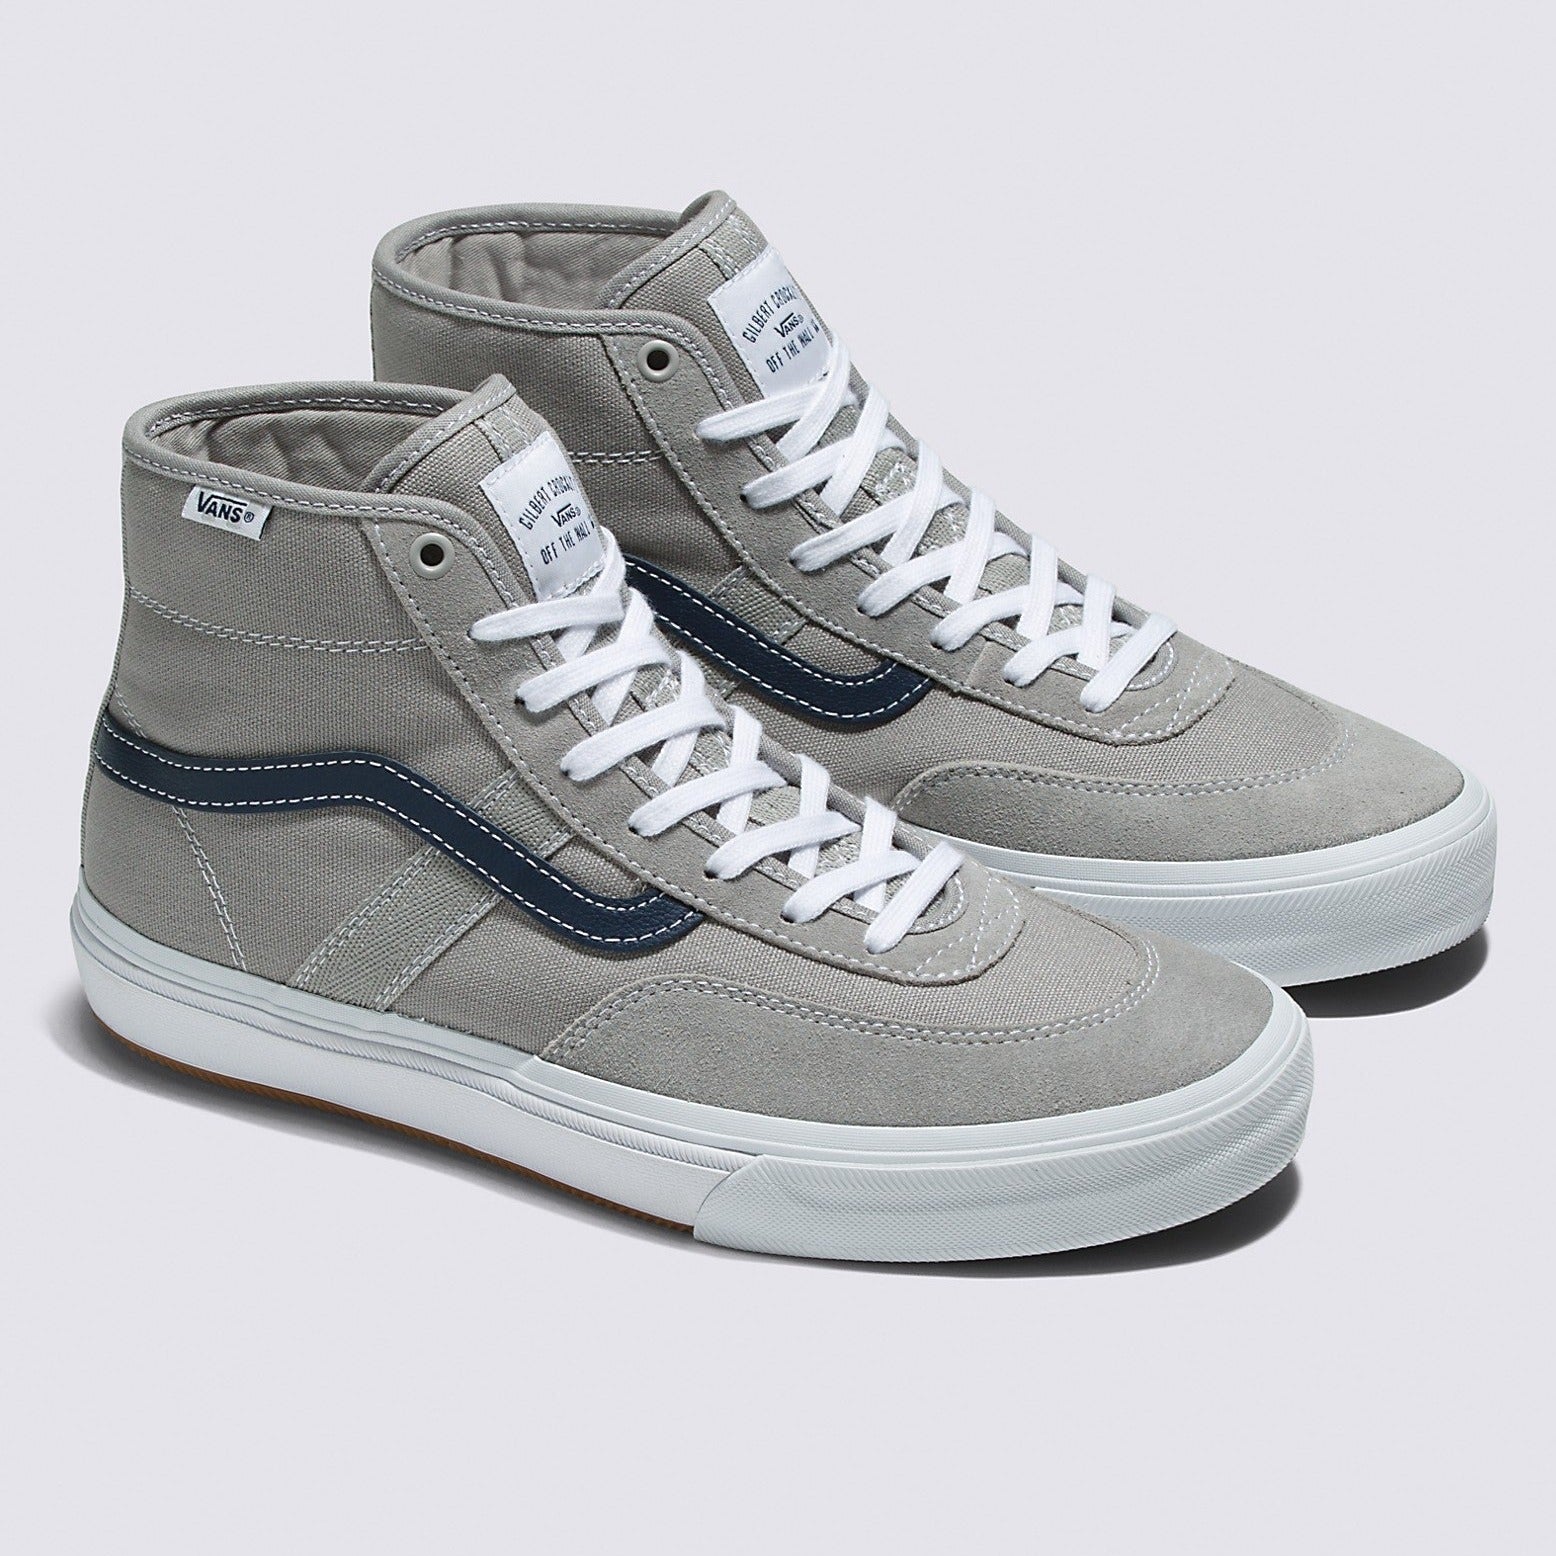 Grey/Blue Gilbert Crockett High Vans Skate Shoe